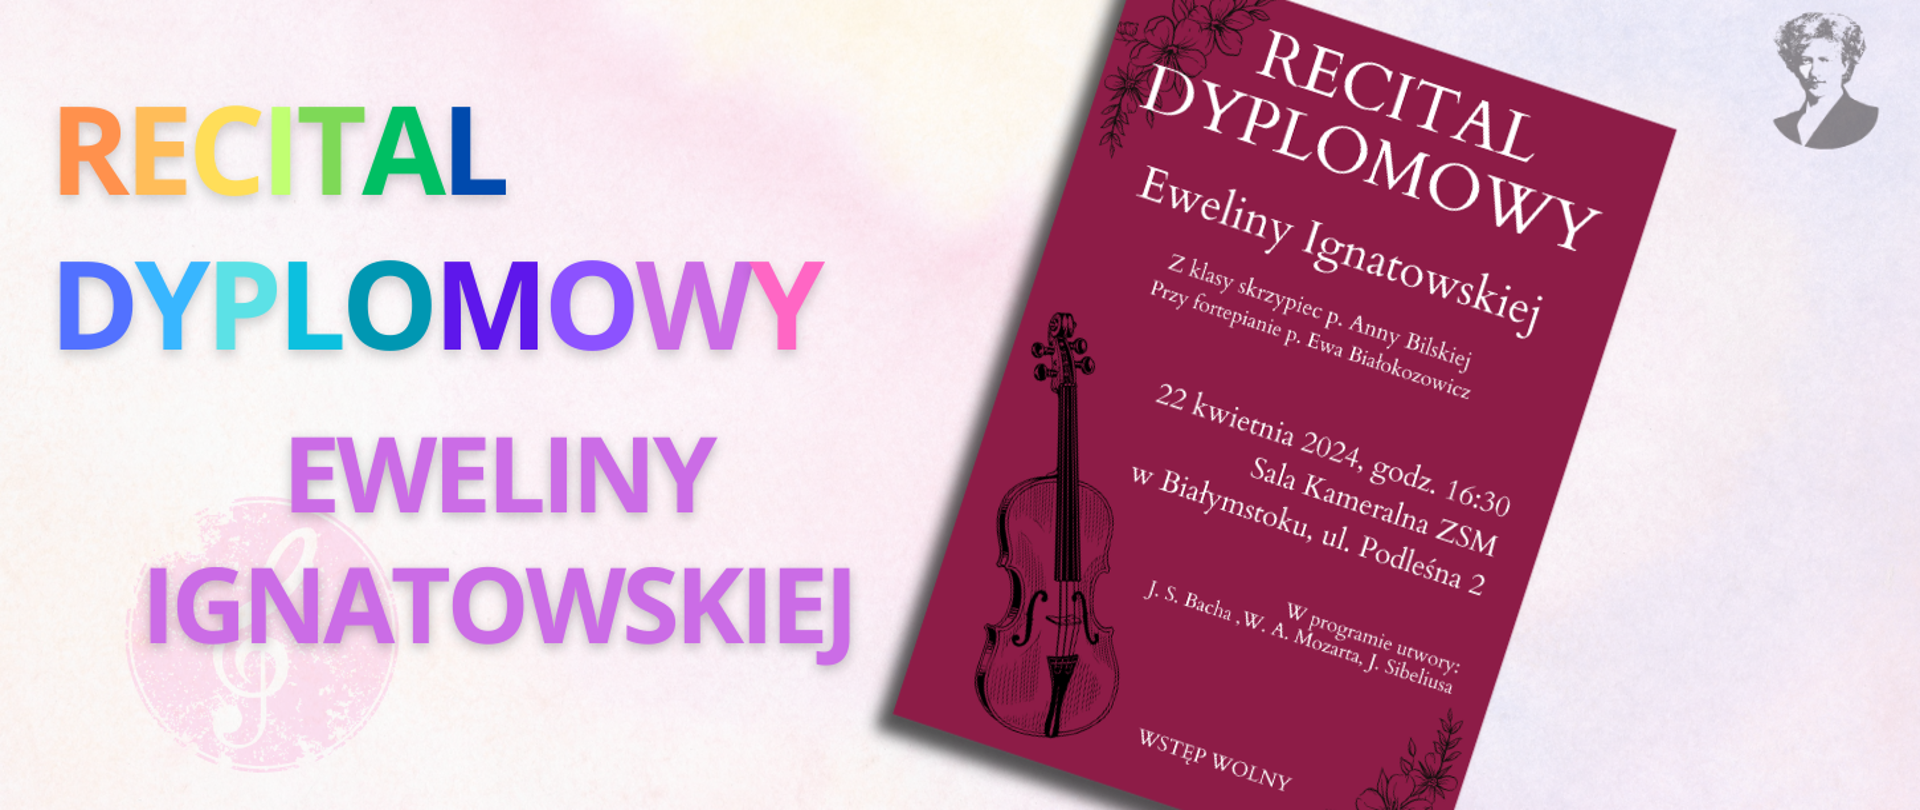 Na jasno-różowym tle wielokolorowy napis "Recital dyplomowy Eweliny Ignatowskiej". Po prawej stronie miniatura plakatu oraz podobizna Ignacego Paderewskiego.